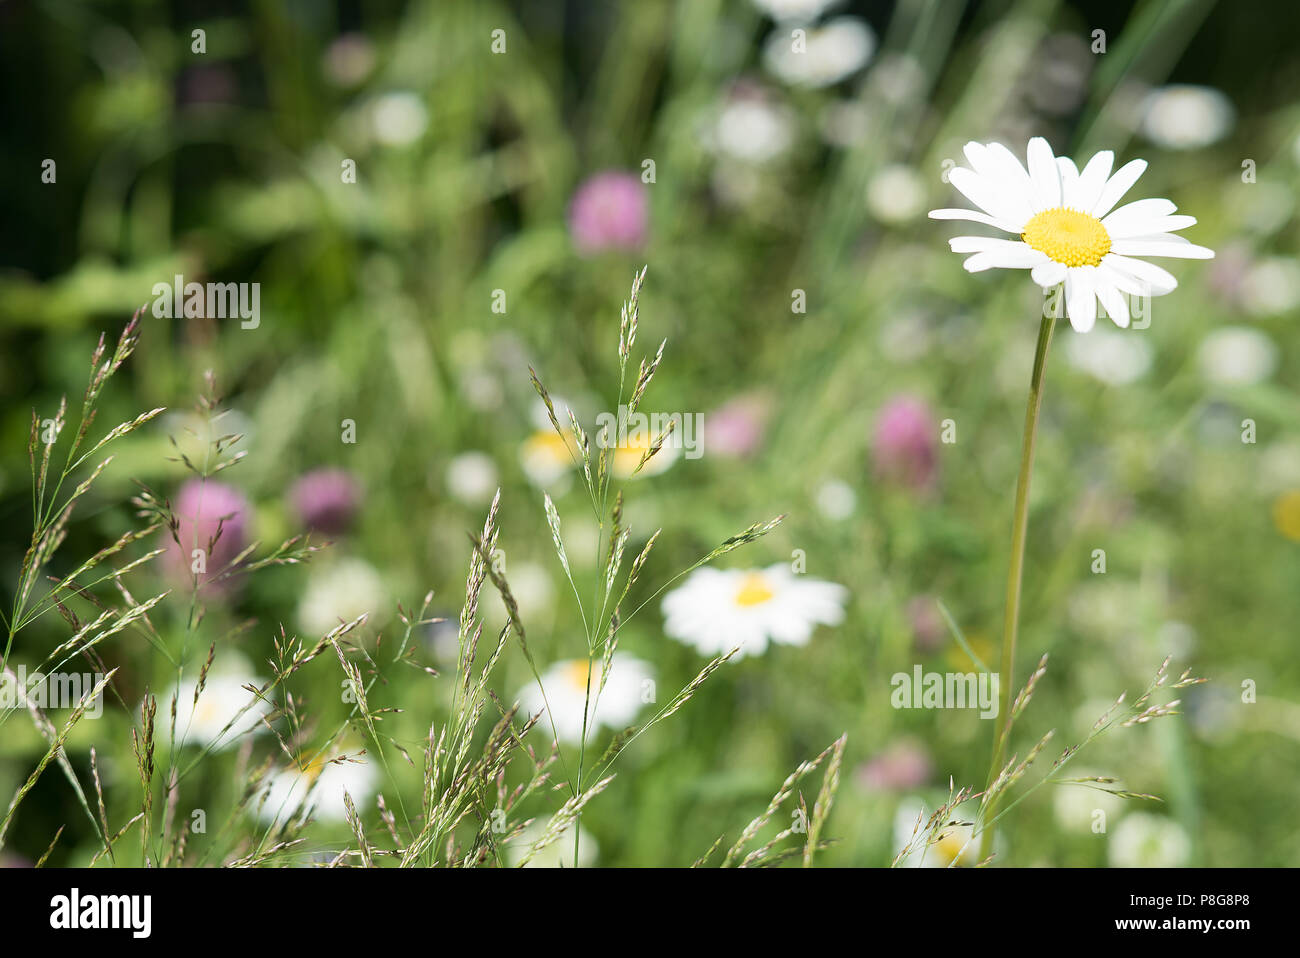 Idyllische, ländliche Szene mit Wildblumen in voller Blüte im Sommer in einer Blumenwiese Stockfoto